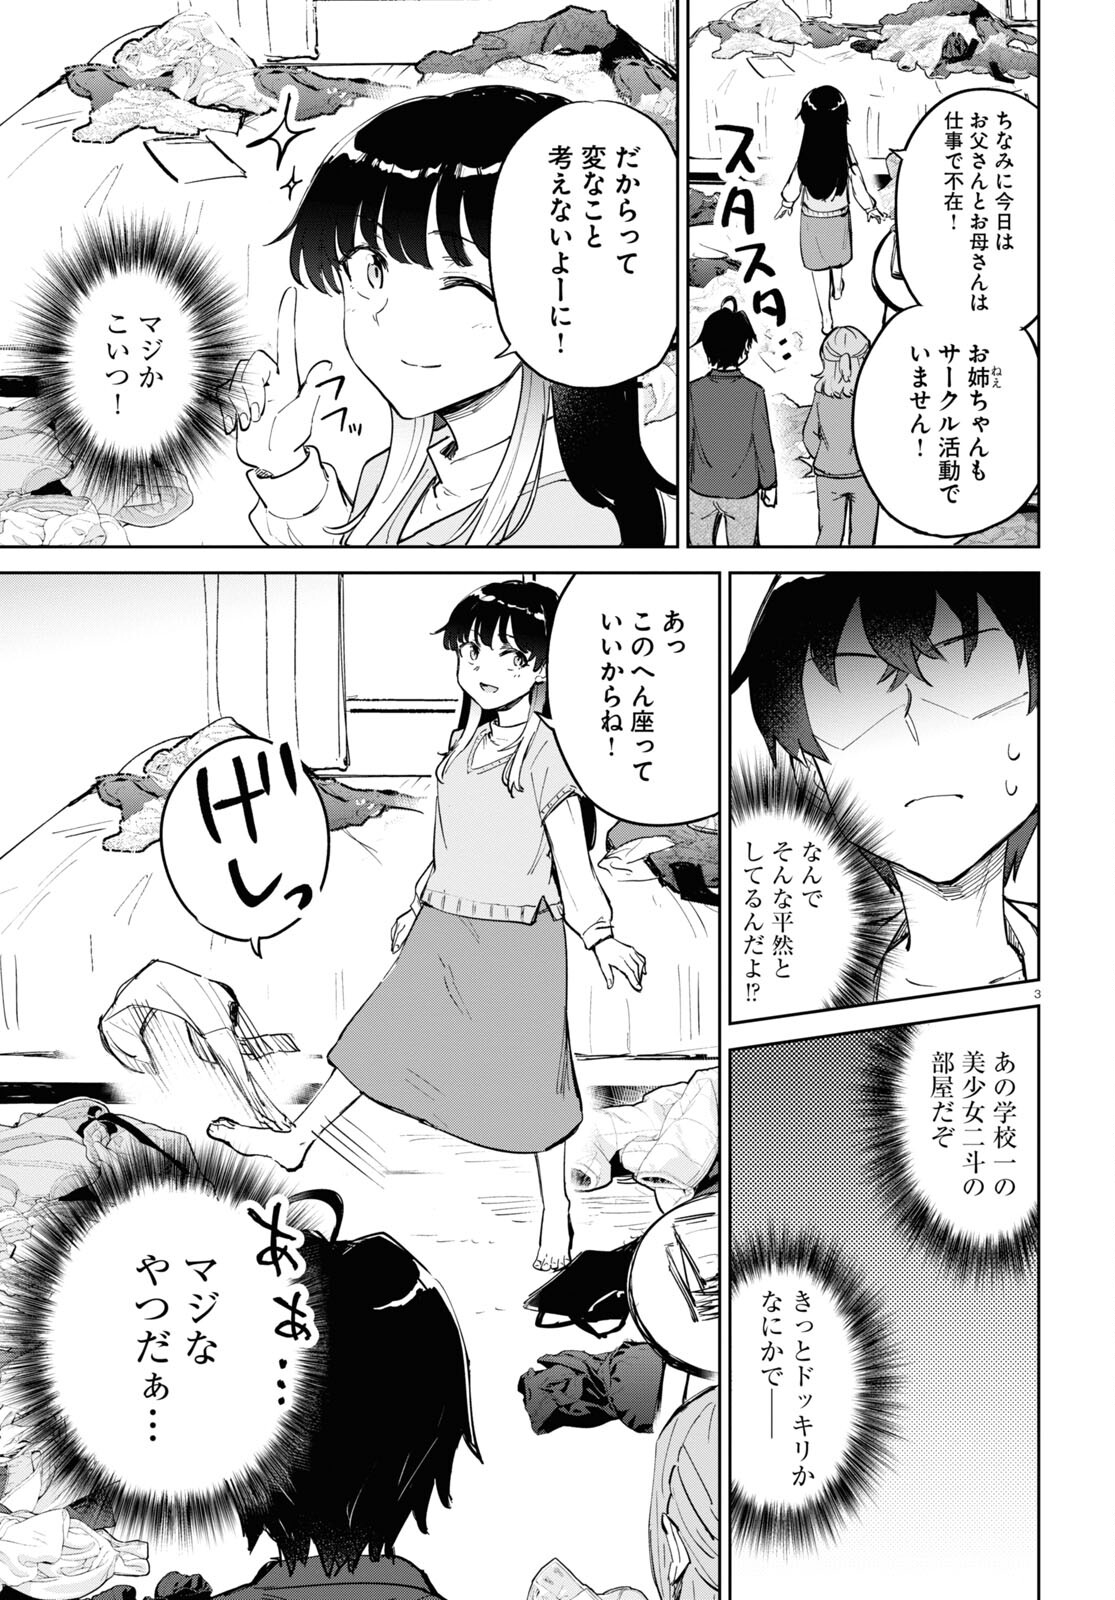 Ashita, Hadashi de Koi. - Chapter 5 - Page 3